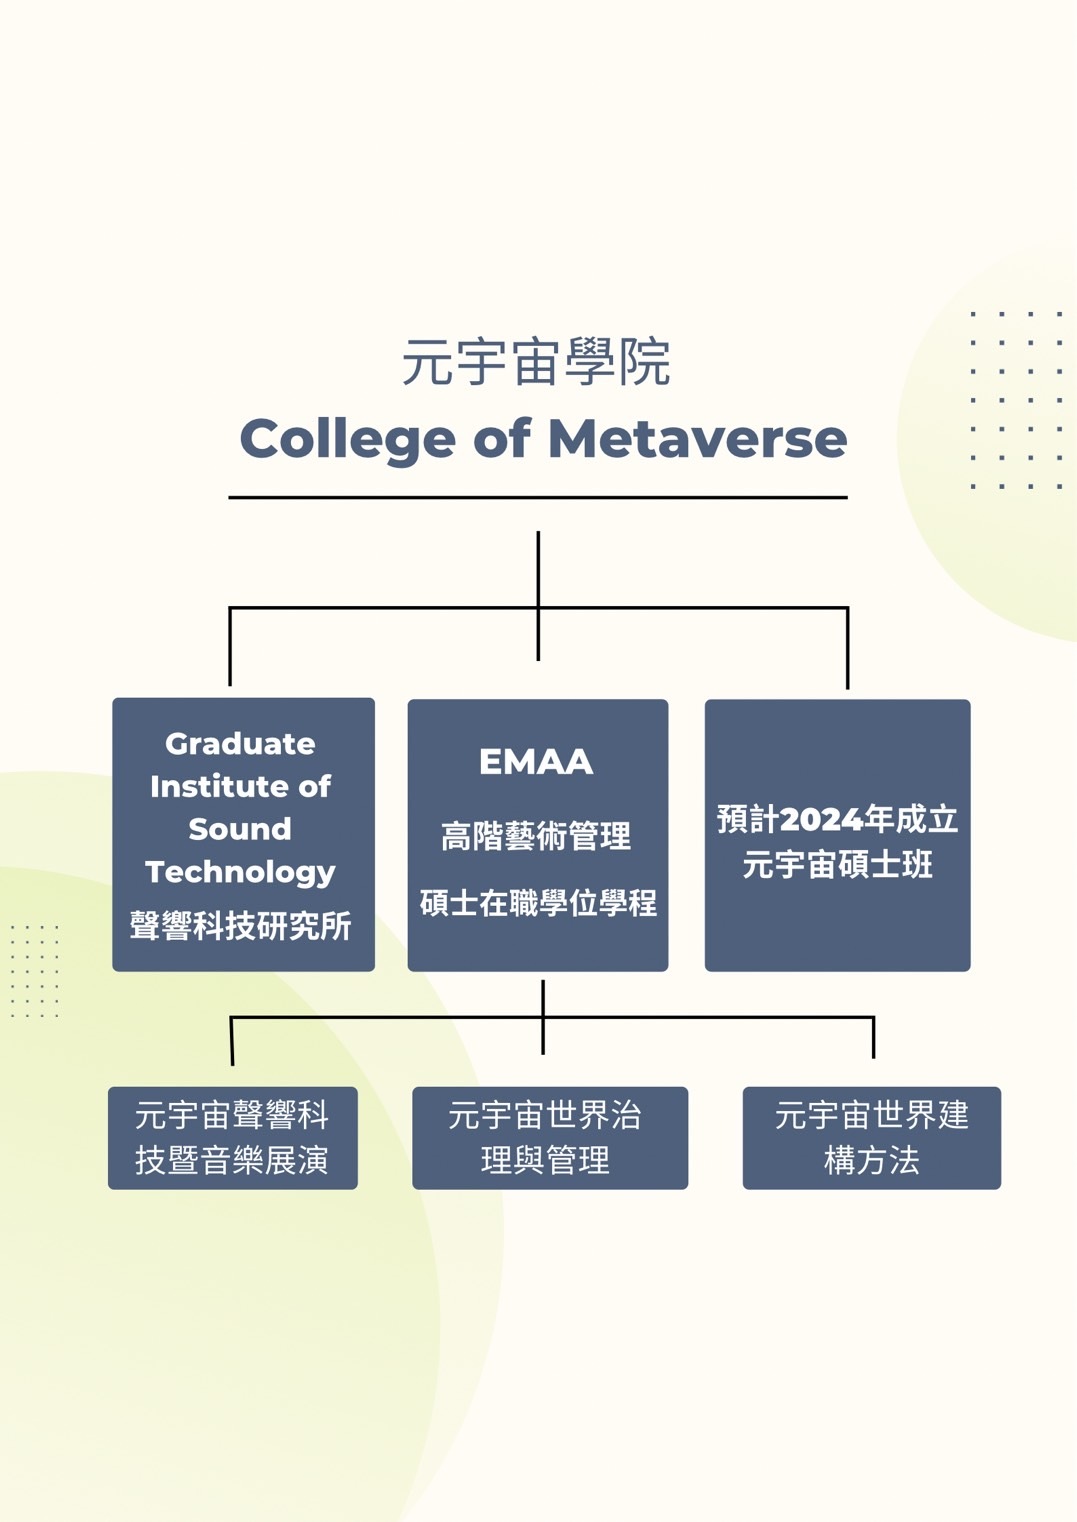 元宇宙學院College of Metaverse組織架構圖